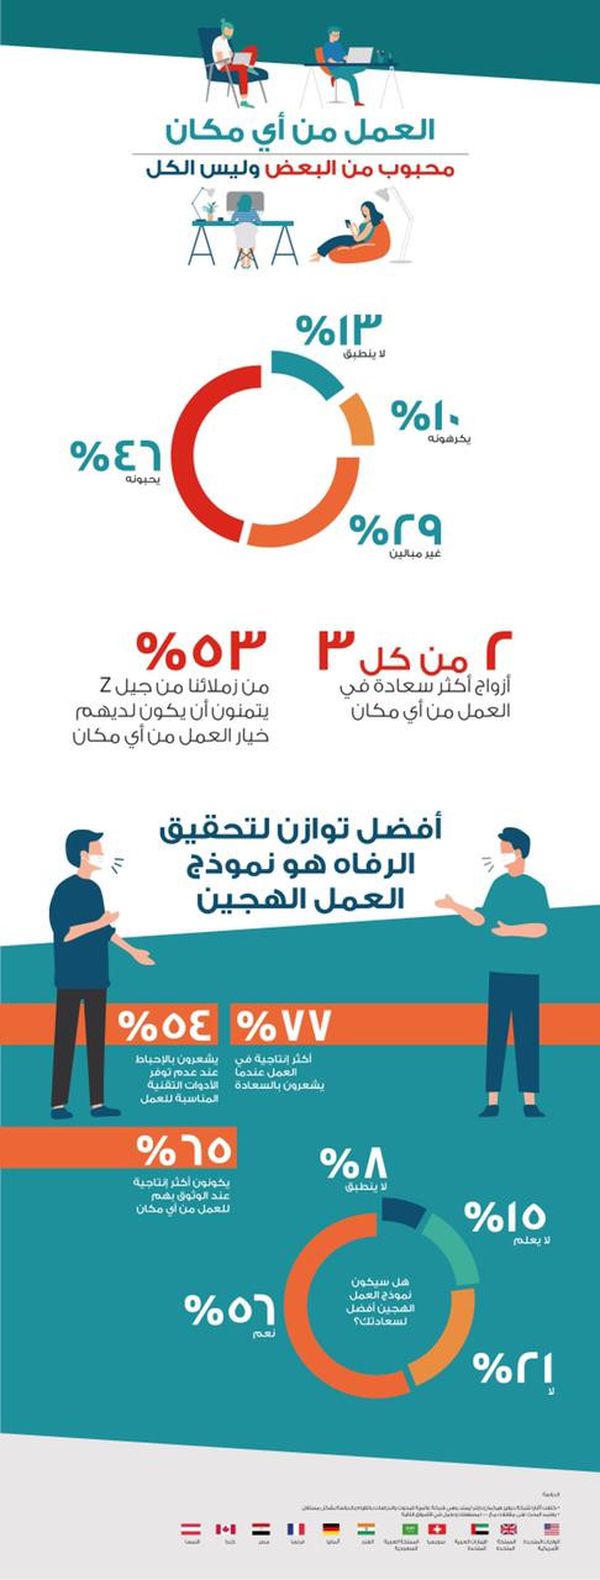  أﭬايا :61% من الموظفين في مصر لديهم الاستعداد لدعم السياسات الحكومية